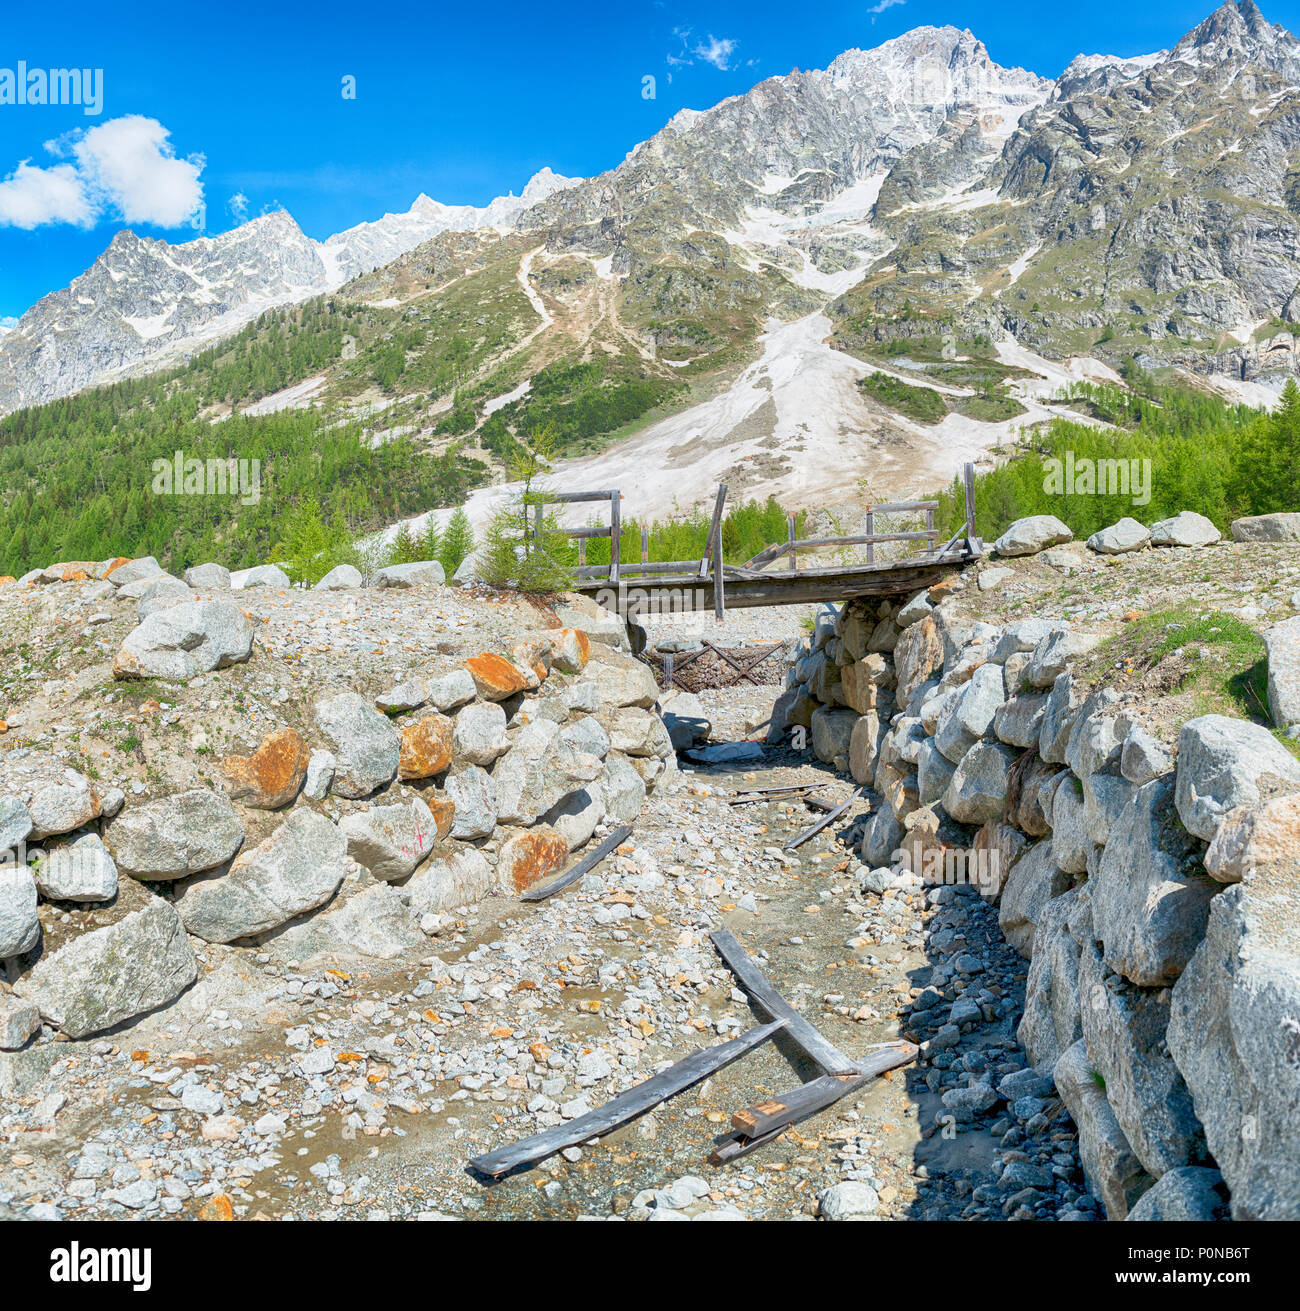 Ponte pedonale distrutto da una valanga in inverno, il paesaggio in Val Ferret con le montagne delle Grandes Jorasses in background Foto Stock